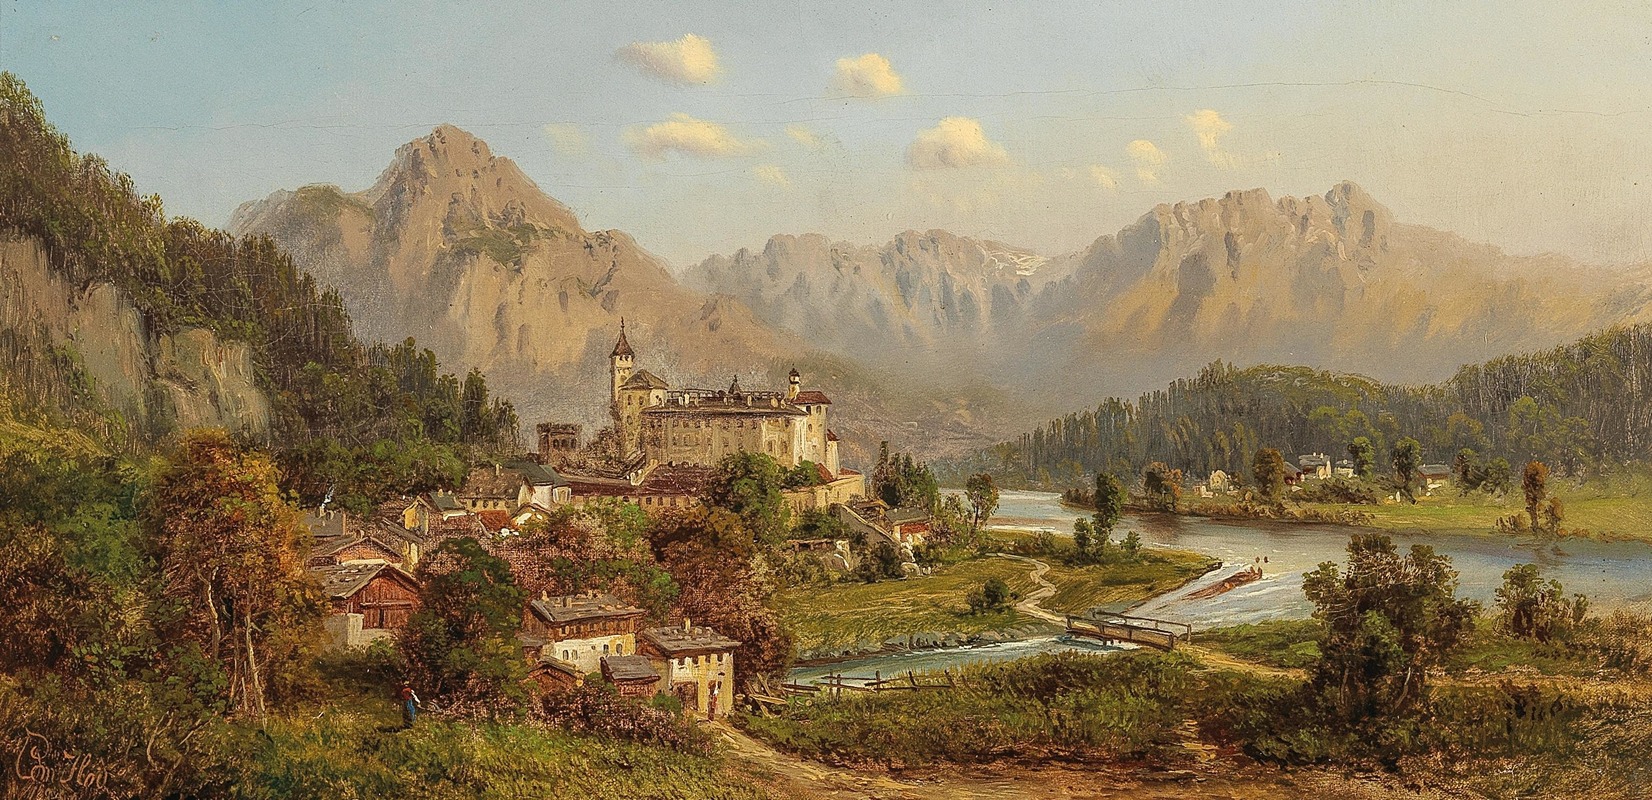 Edmund Höd - Schloß Ambras in Tirol